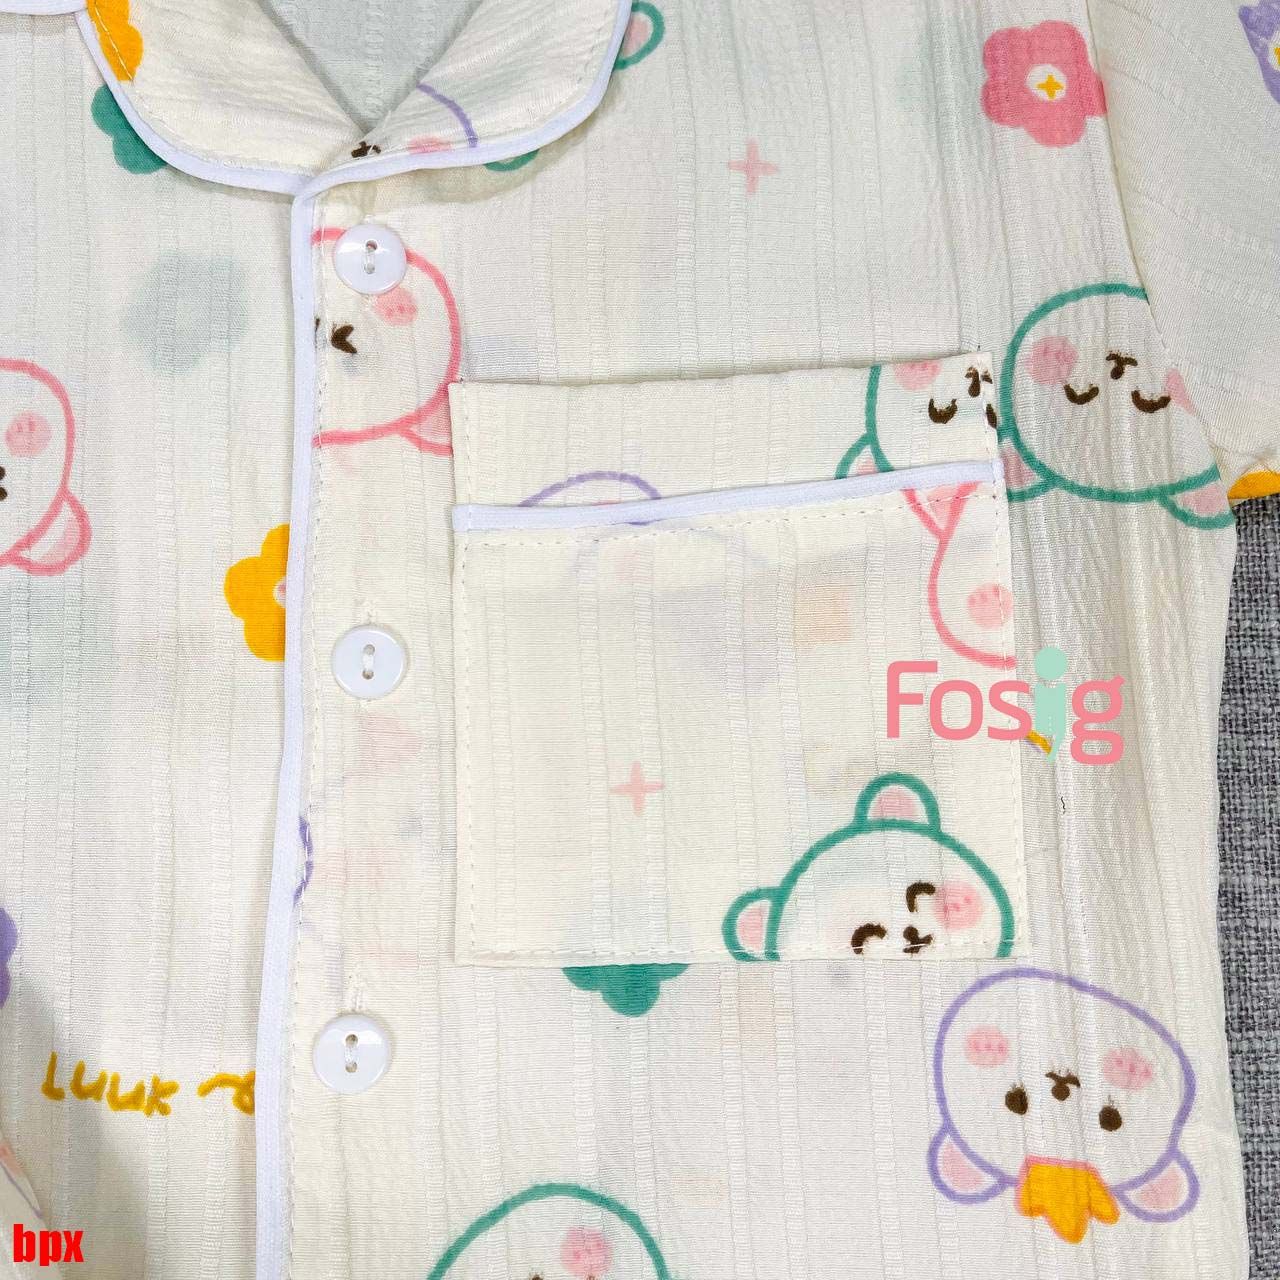  [6-15kg] Set Đồ Bộ Ngủ Ngắn Pijama Vải Xô Cho Bé - Kem Gấu Hoa 